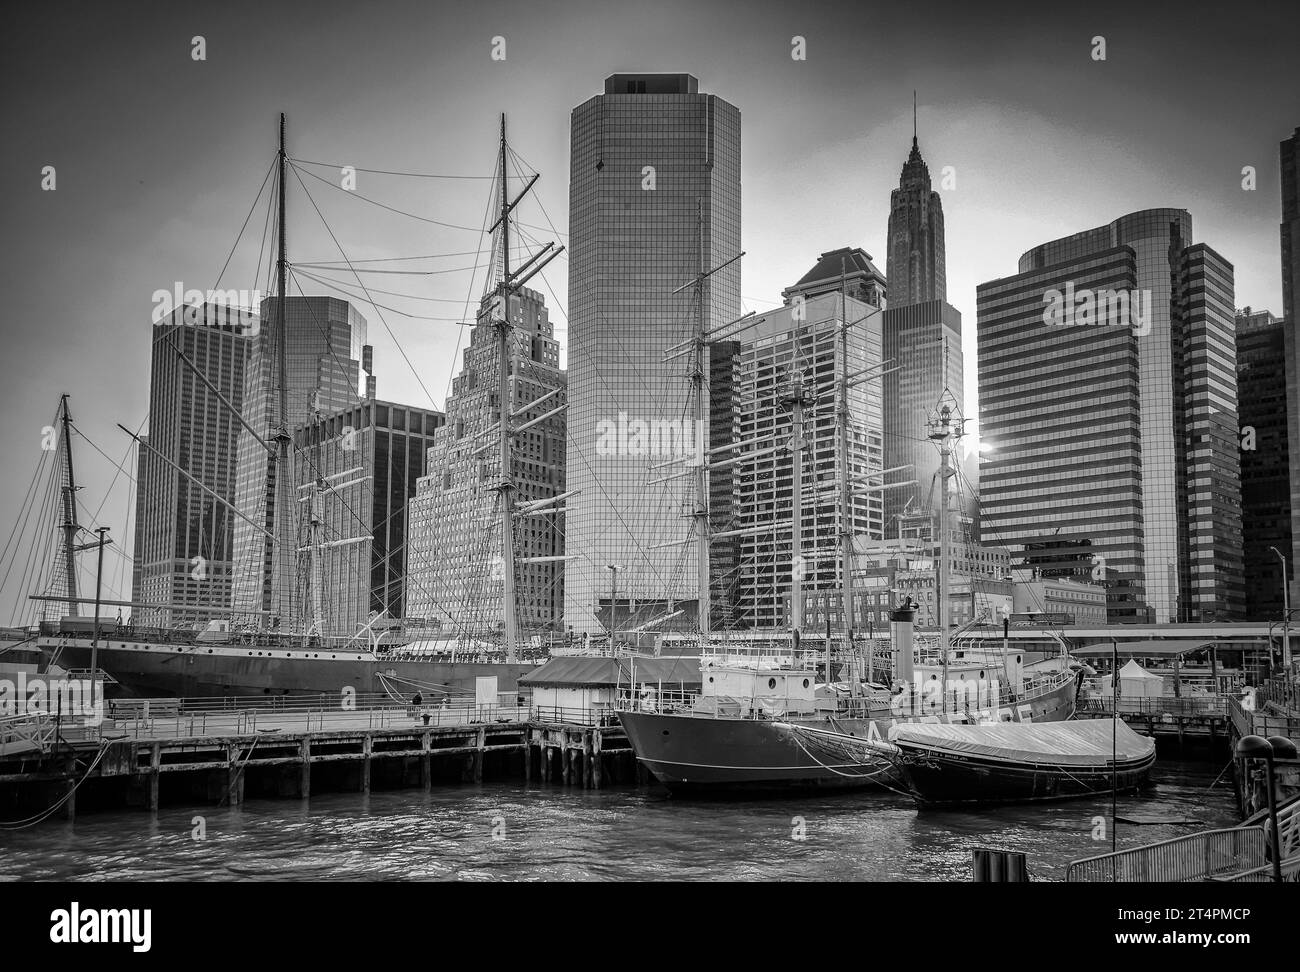 NEW YORK CITY - MAI 30: South Street Seaport am 30. Mai 2013 in New York City, USA. Der Hafen ist ein ausgewiesener historischer Bezirk mit dem größten Stockfoto